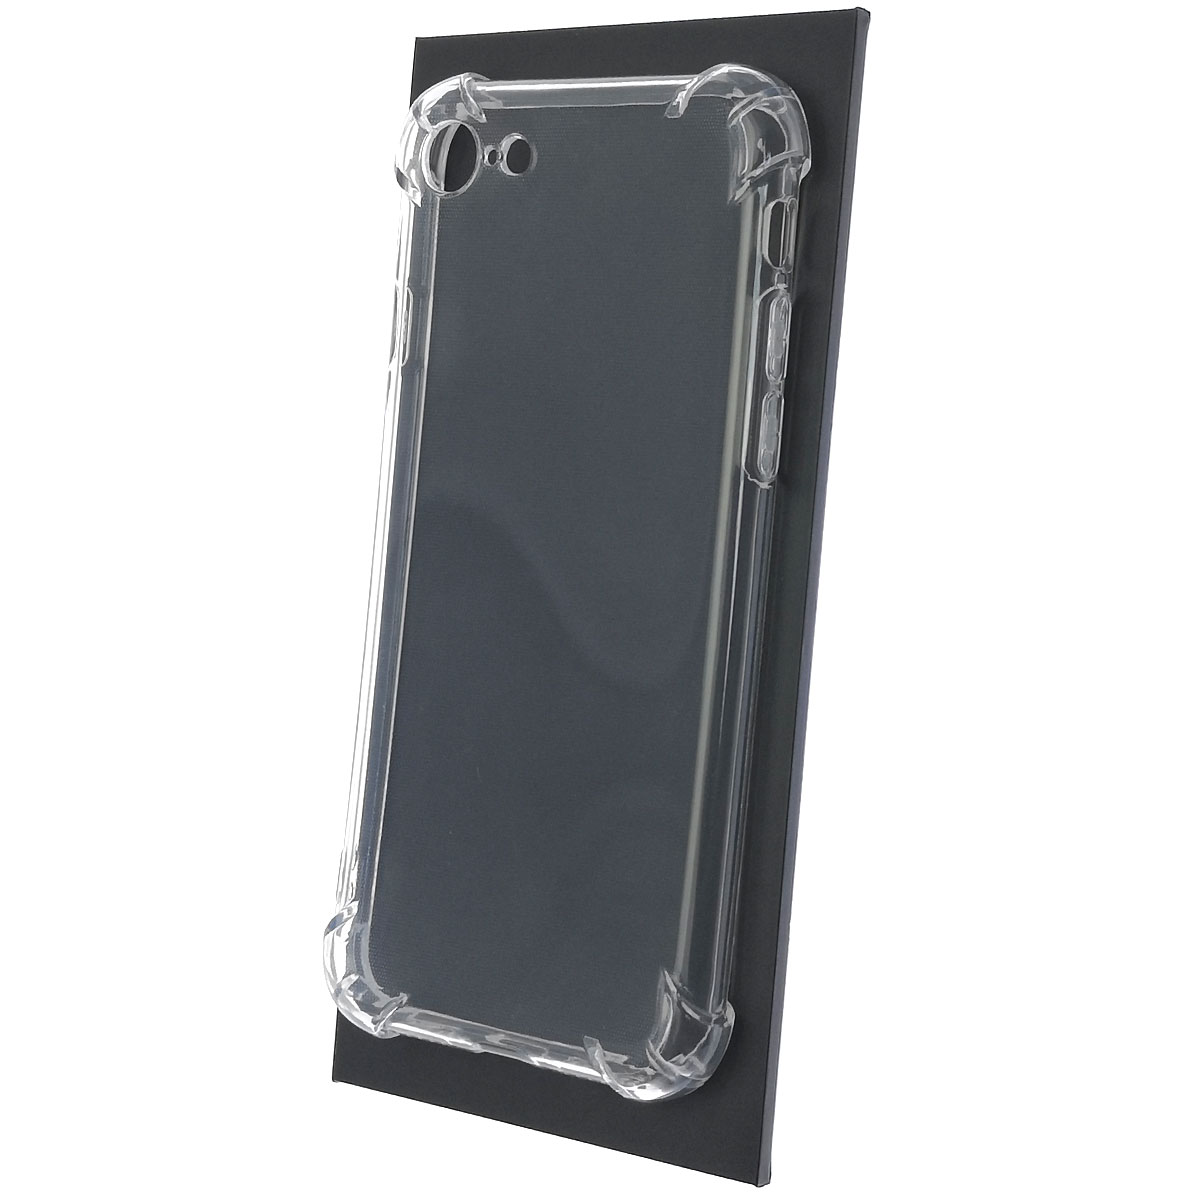 Чехол накладка GPS для APPLE iPhone 7, iPhone 8, силикон, 2 выреза под камеру, цвет прозрачный.